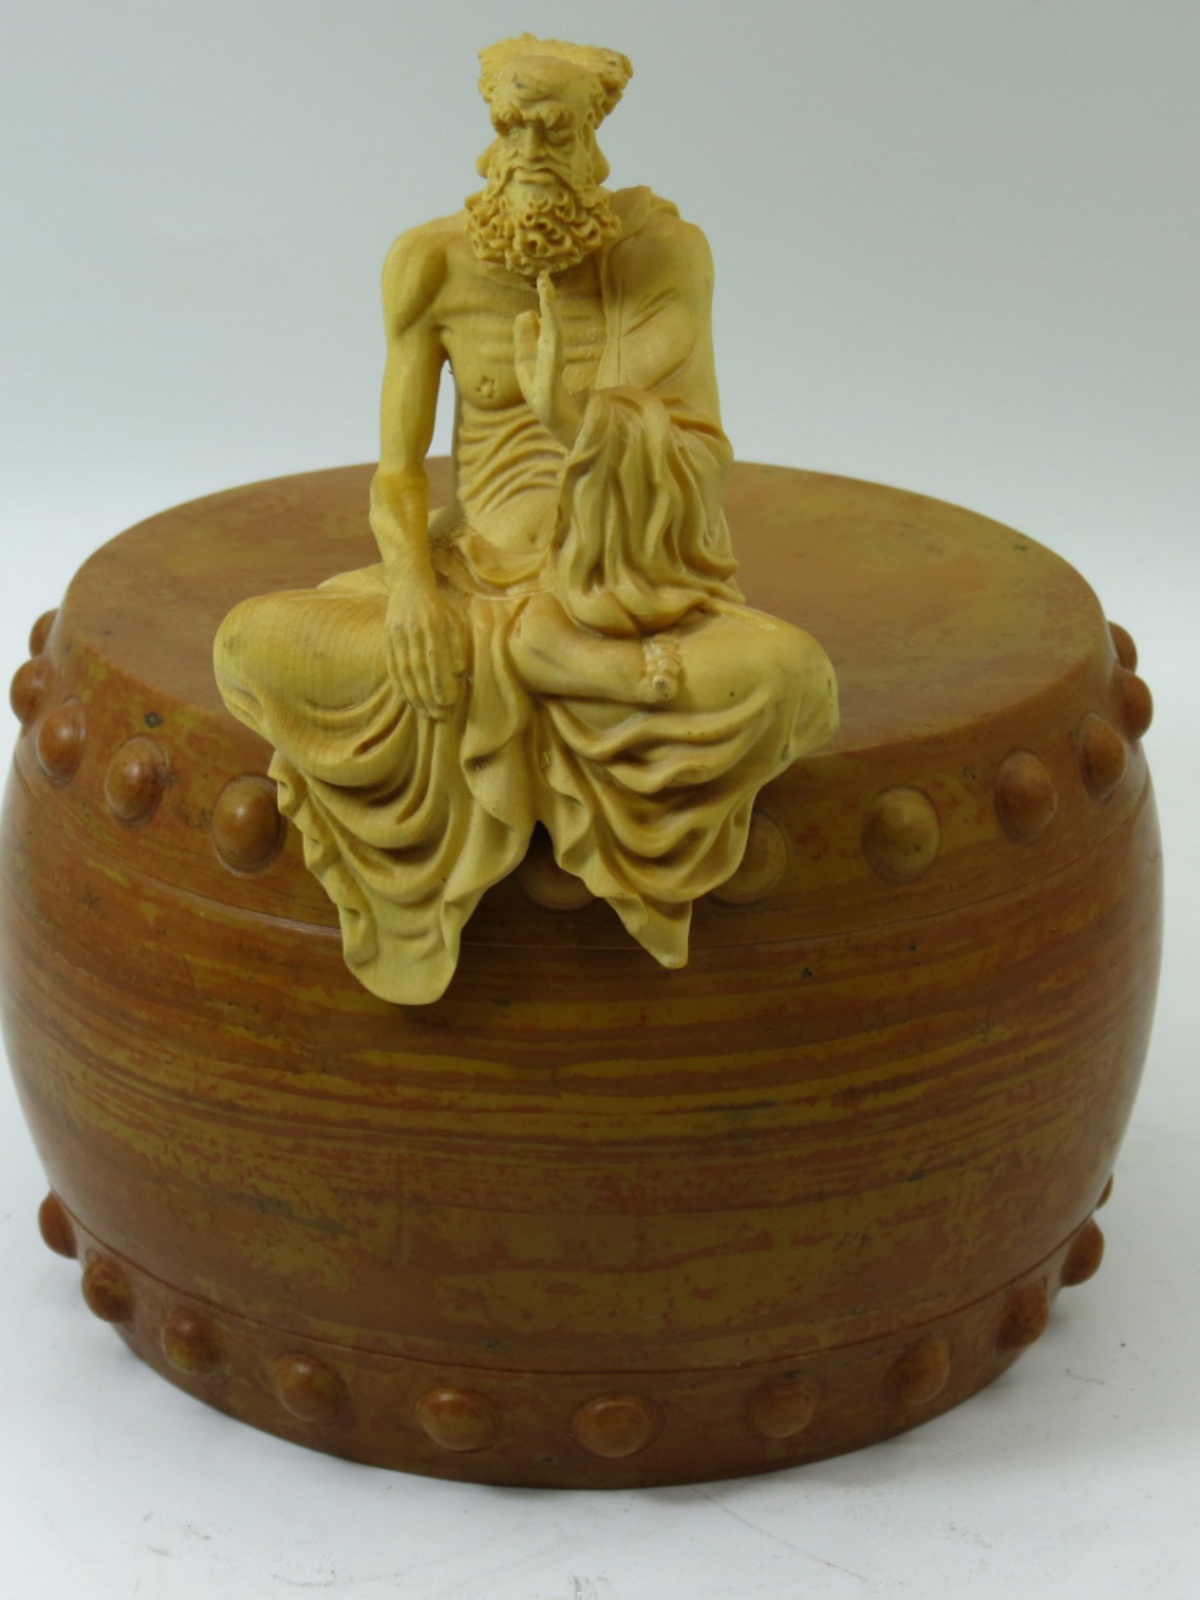 红丝鼓-特色中国非遗红丝砚文化精品民间传统手工艺文房雕刻收藏